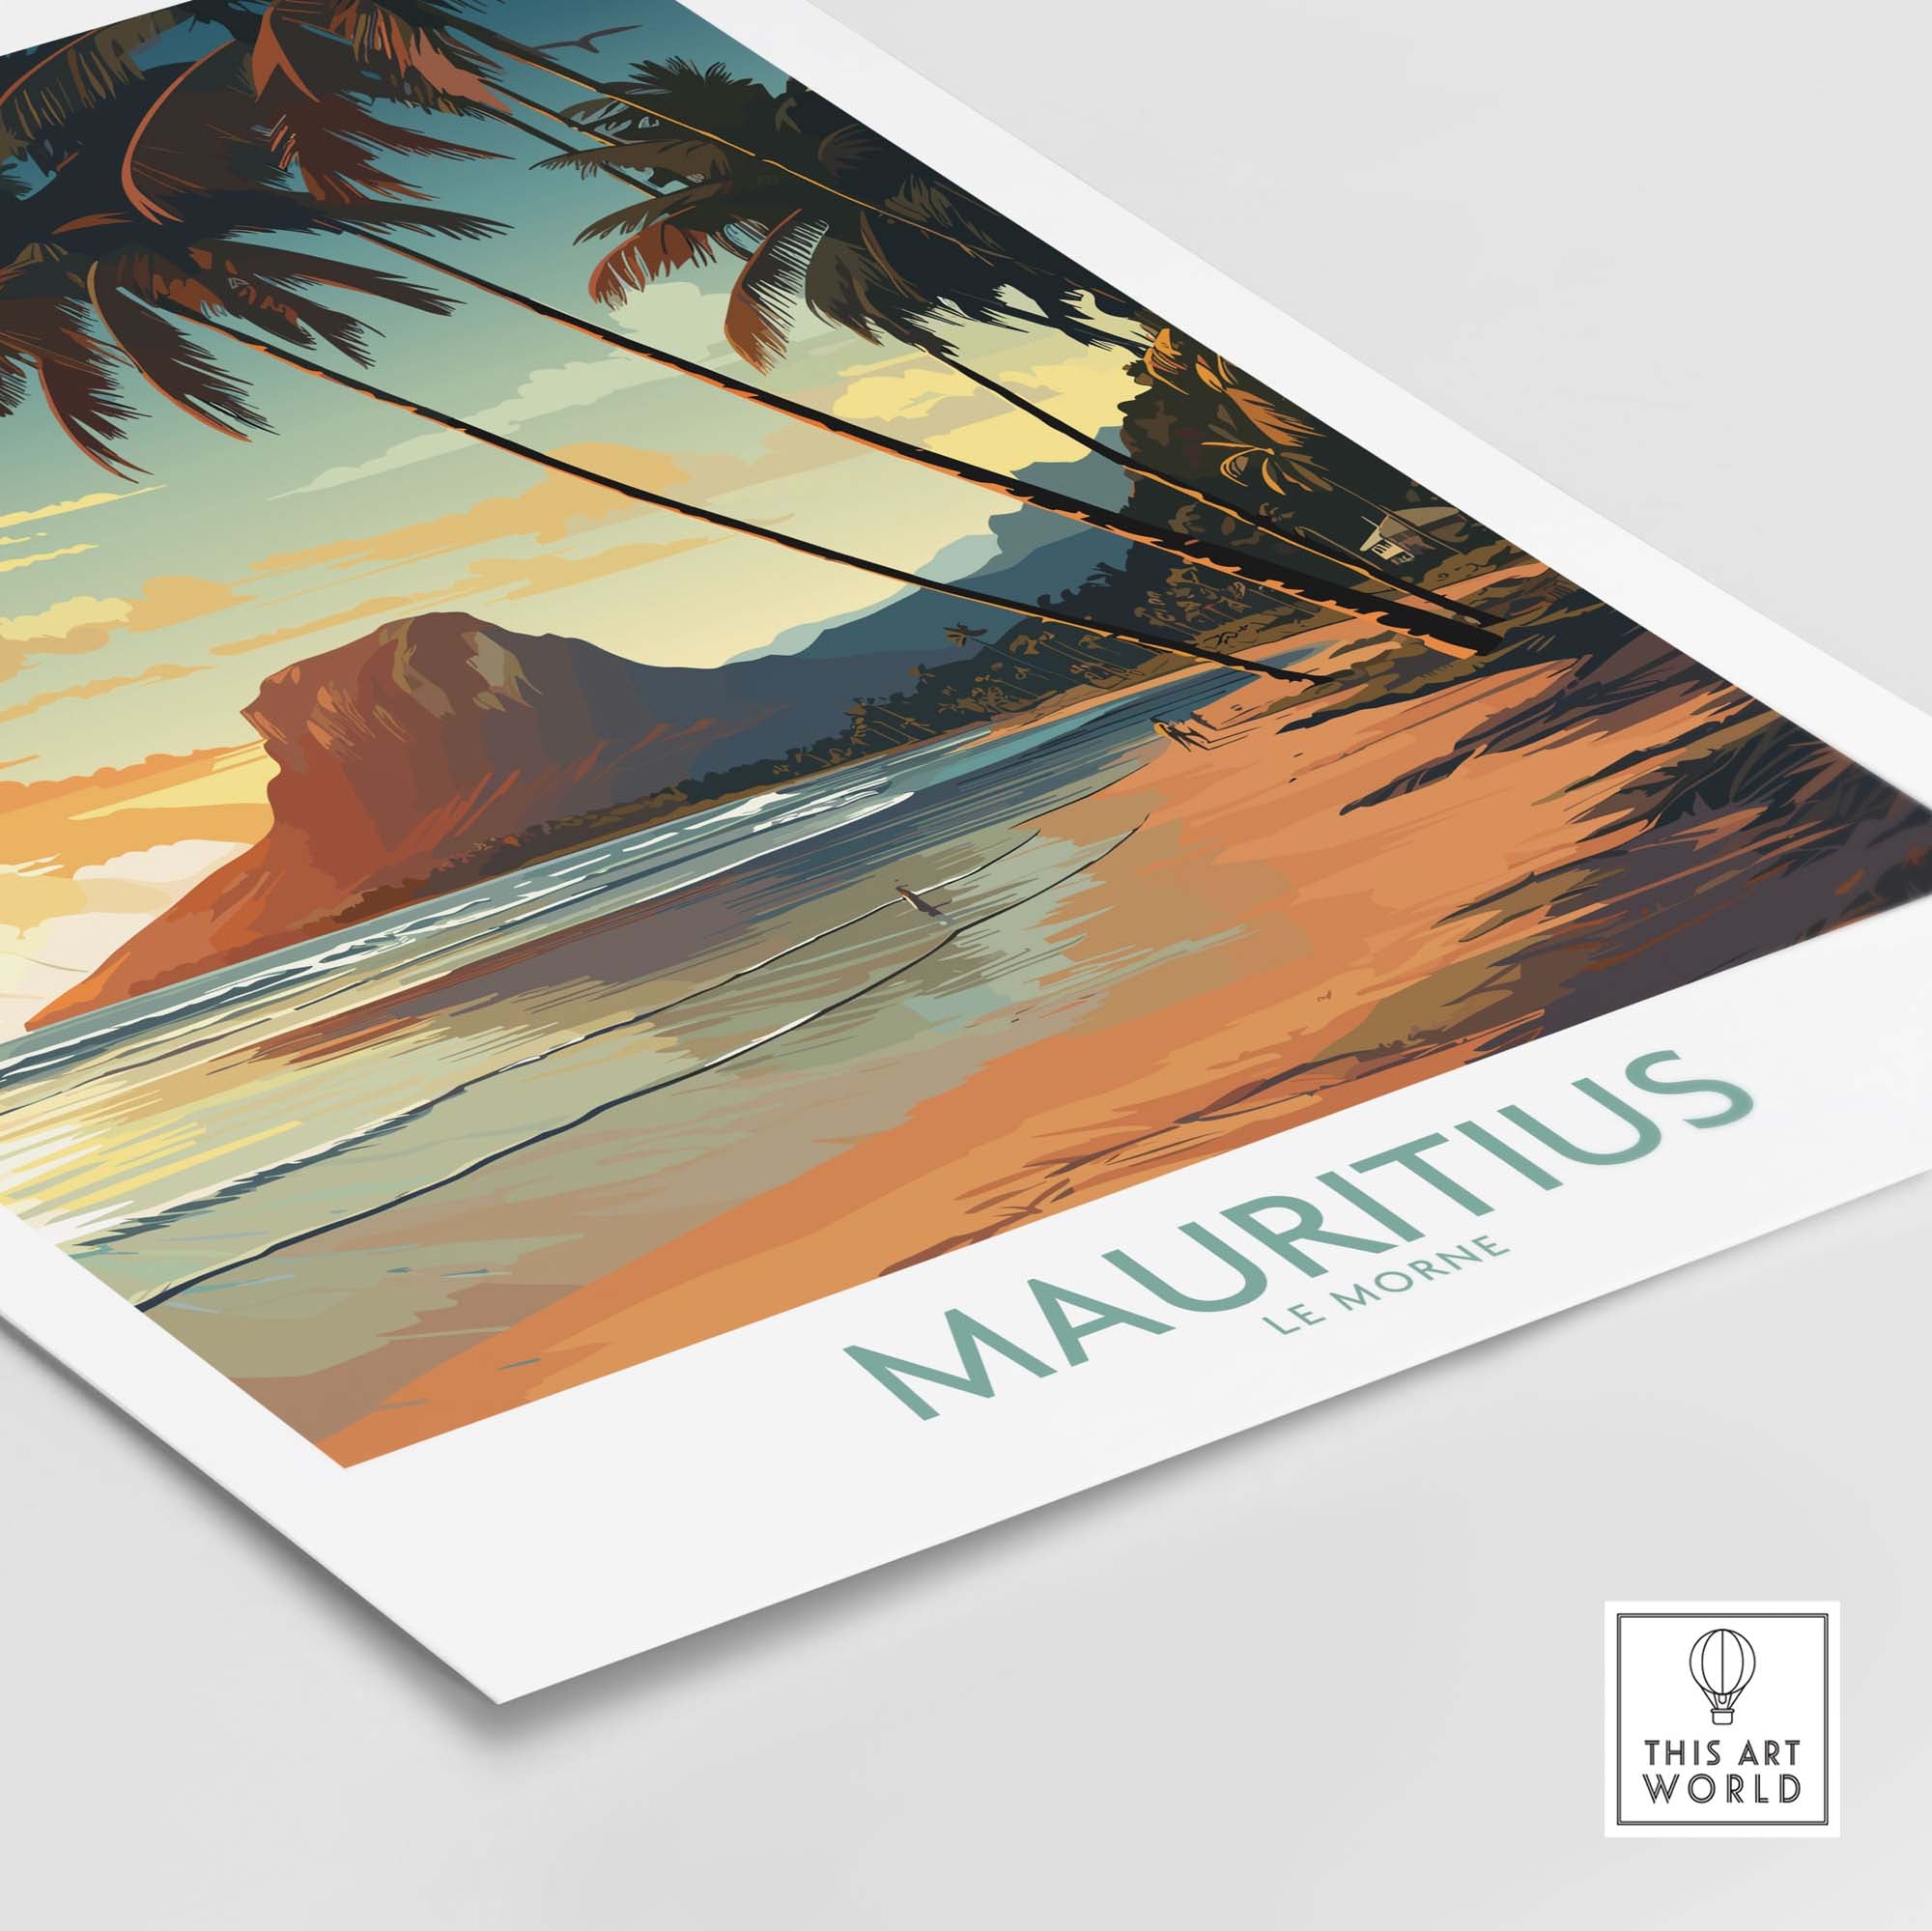 Mauritius Le Morne Print